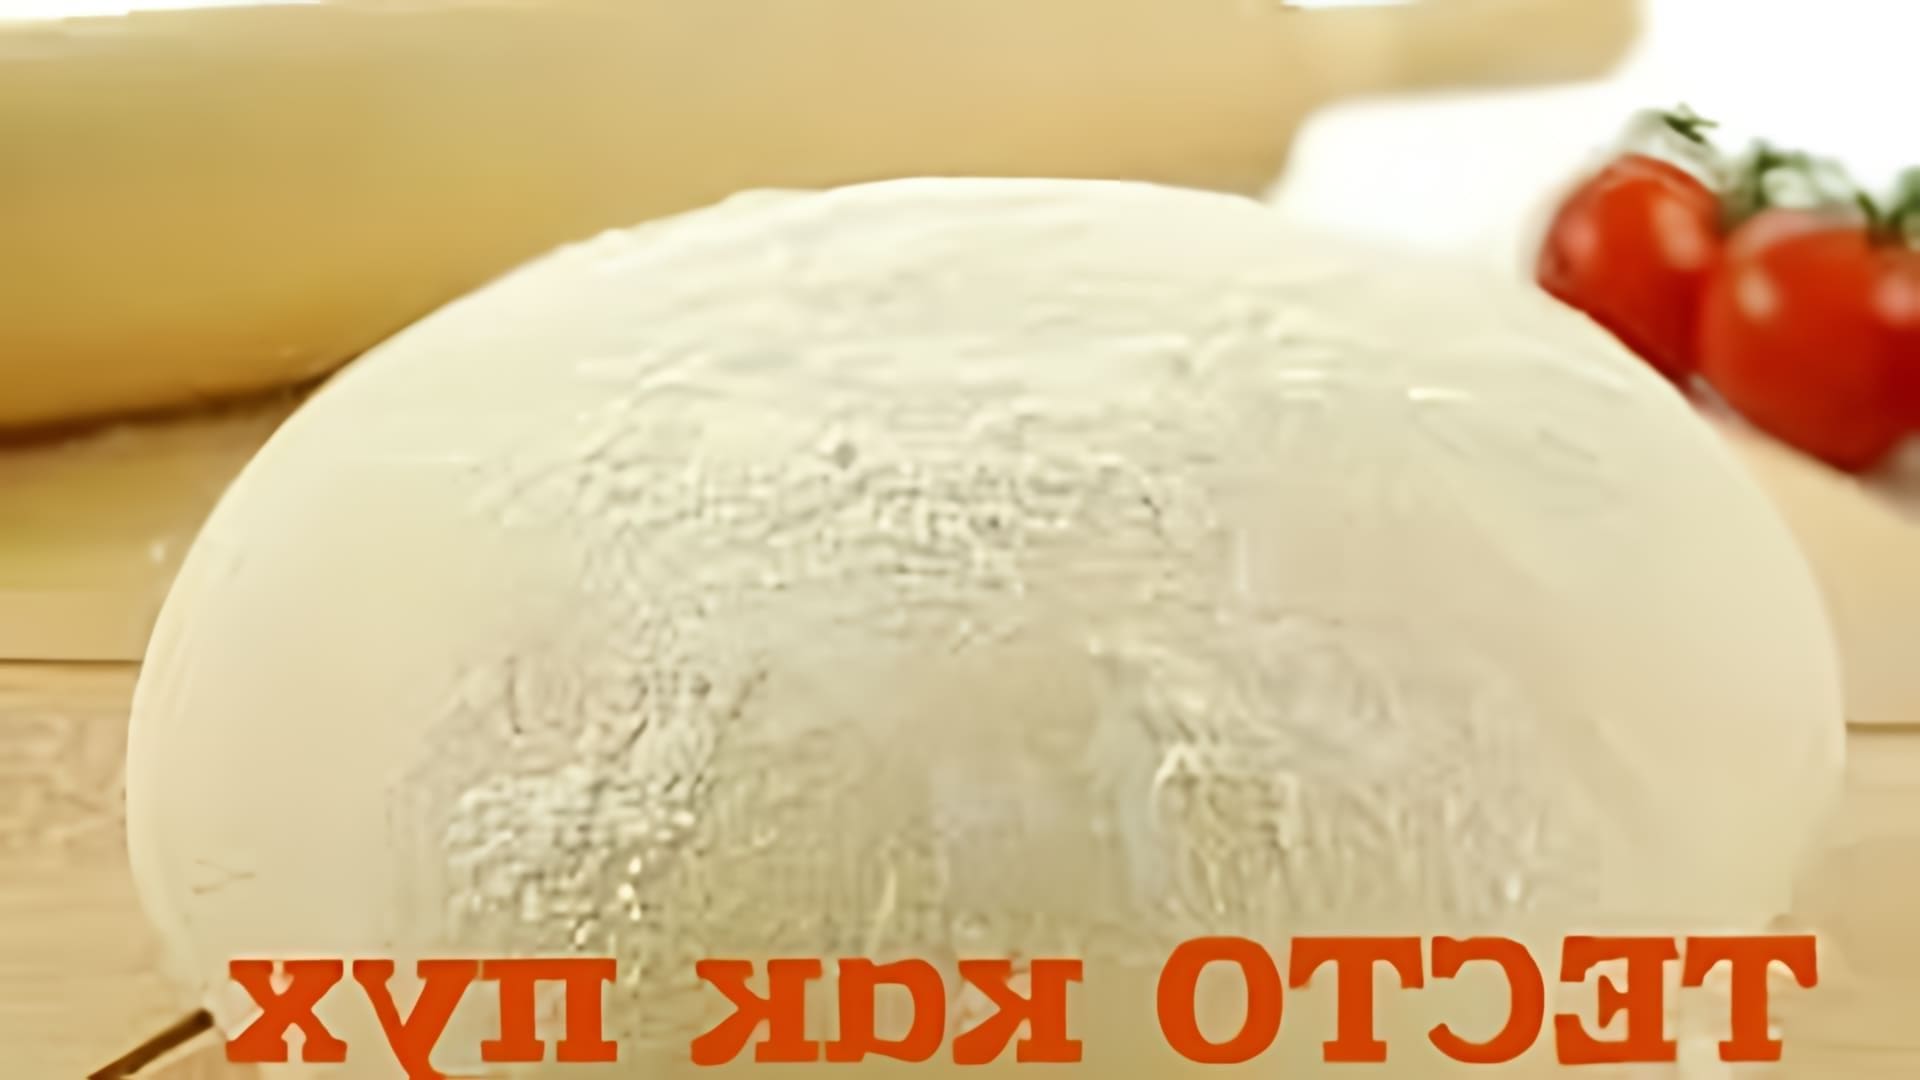 В этом видео демонстрируется процесс приготовления дрожжевого теста на кефире